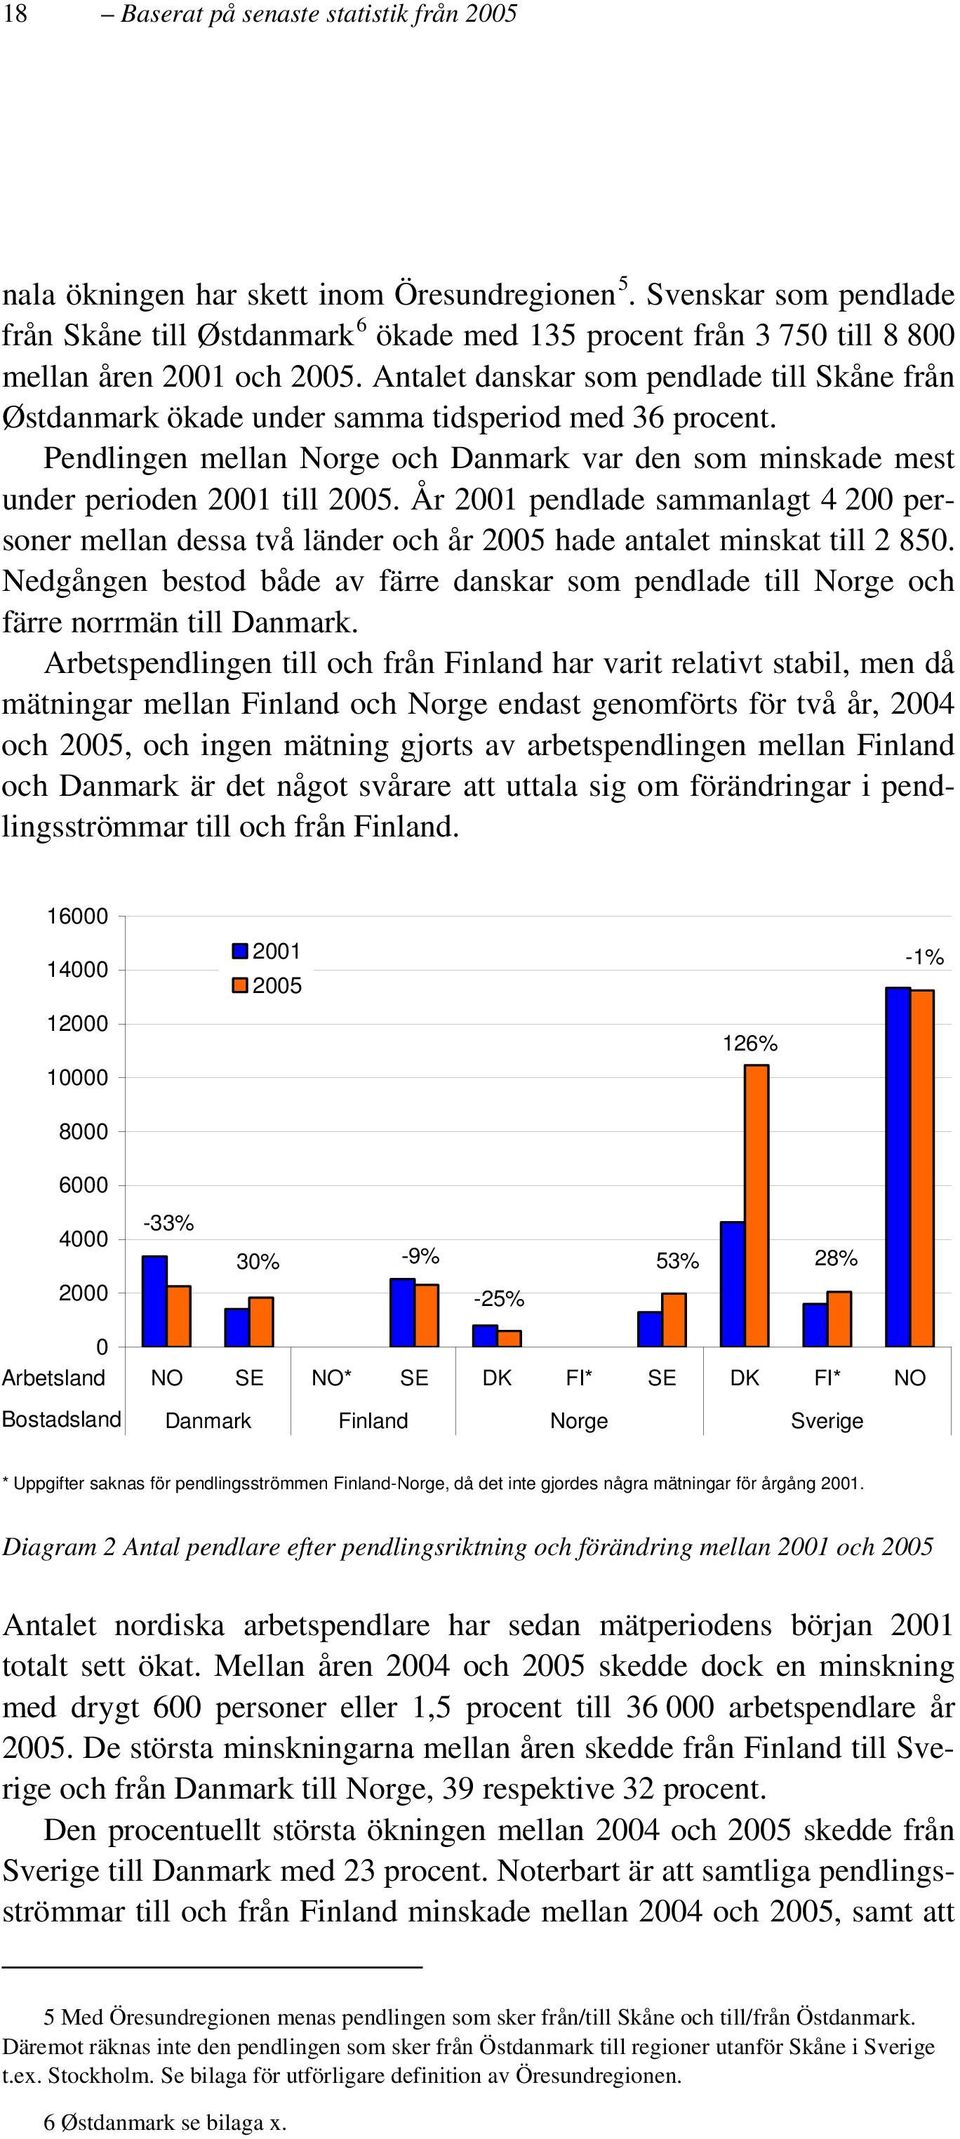 Antalet danskar som pendlade till Skåne från Østdanmark ökade under samma tidsperiod med 36 procent. Pendlingen mellan Norge och Danmark var den som minskade mest under perioden 2001 till 2005.